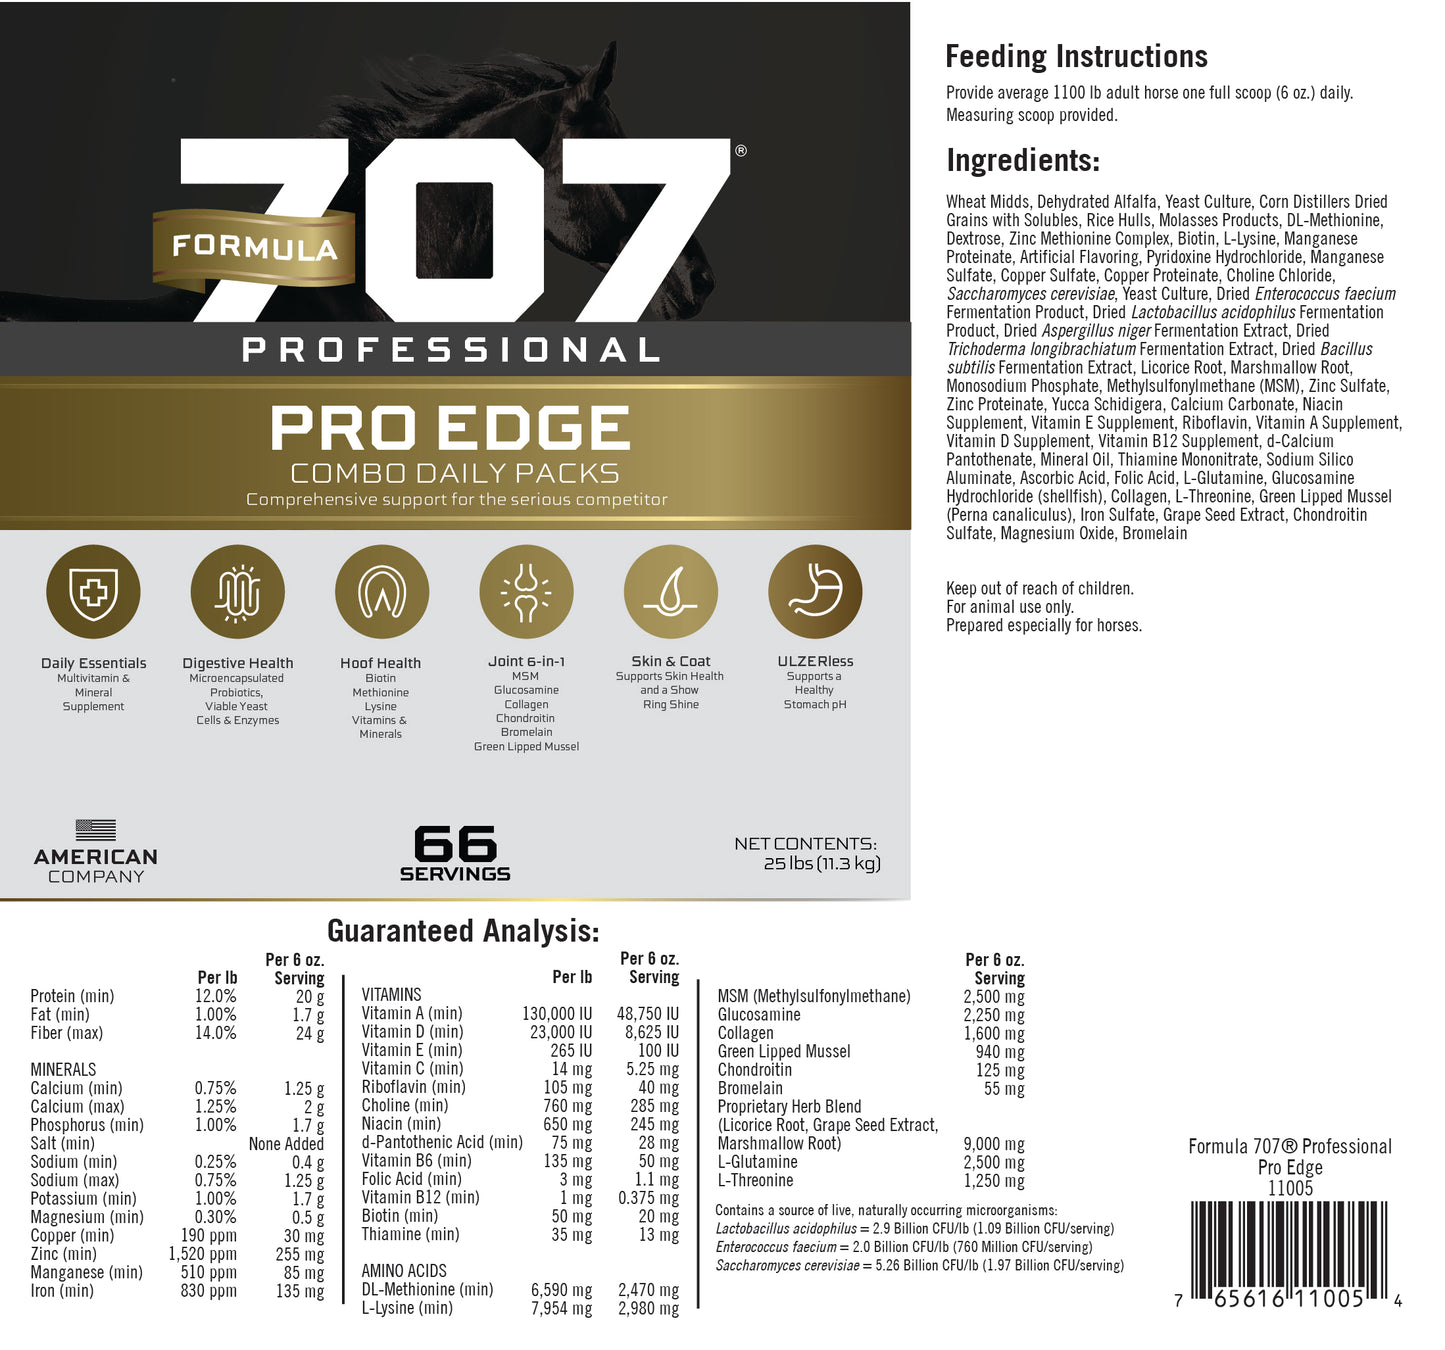 Pro Edge Bulk - 25 lb bag